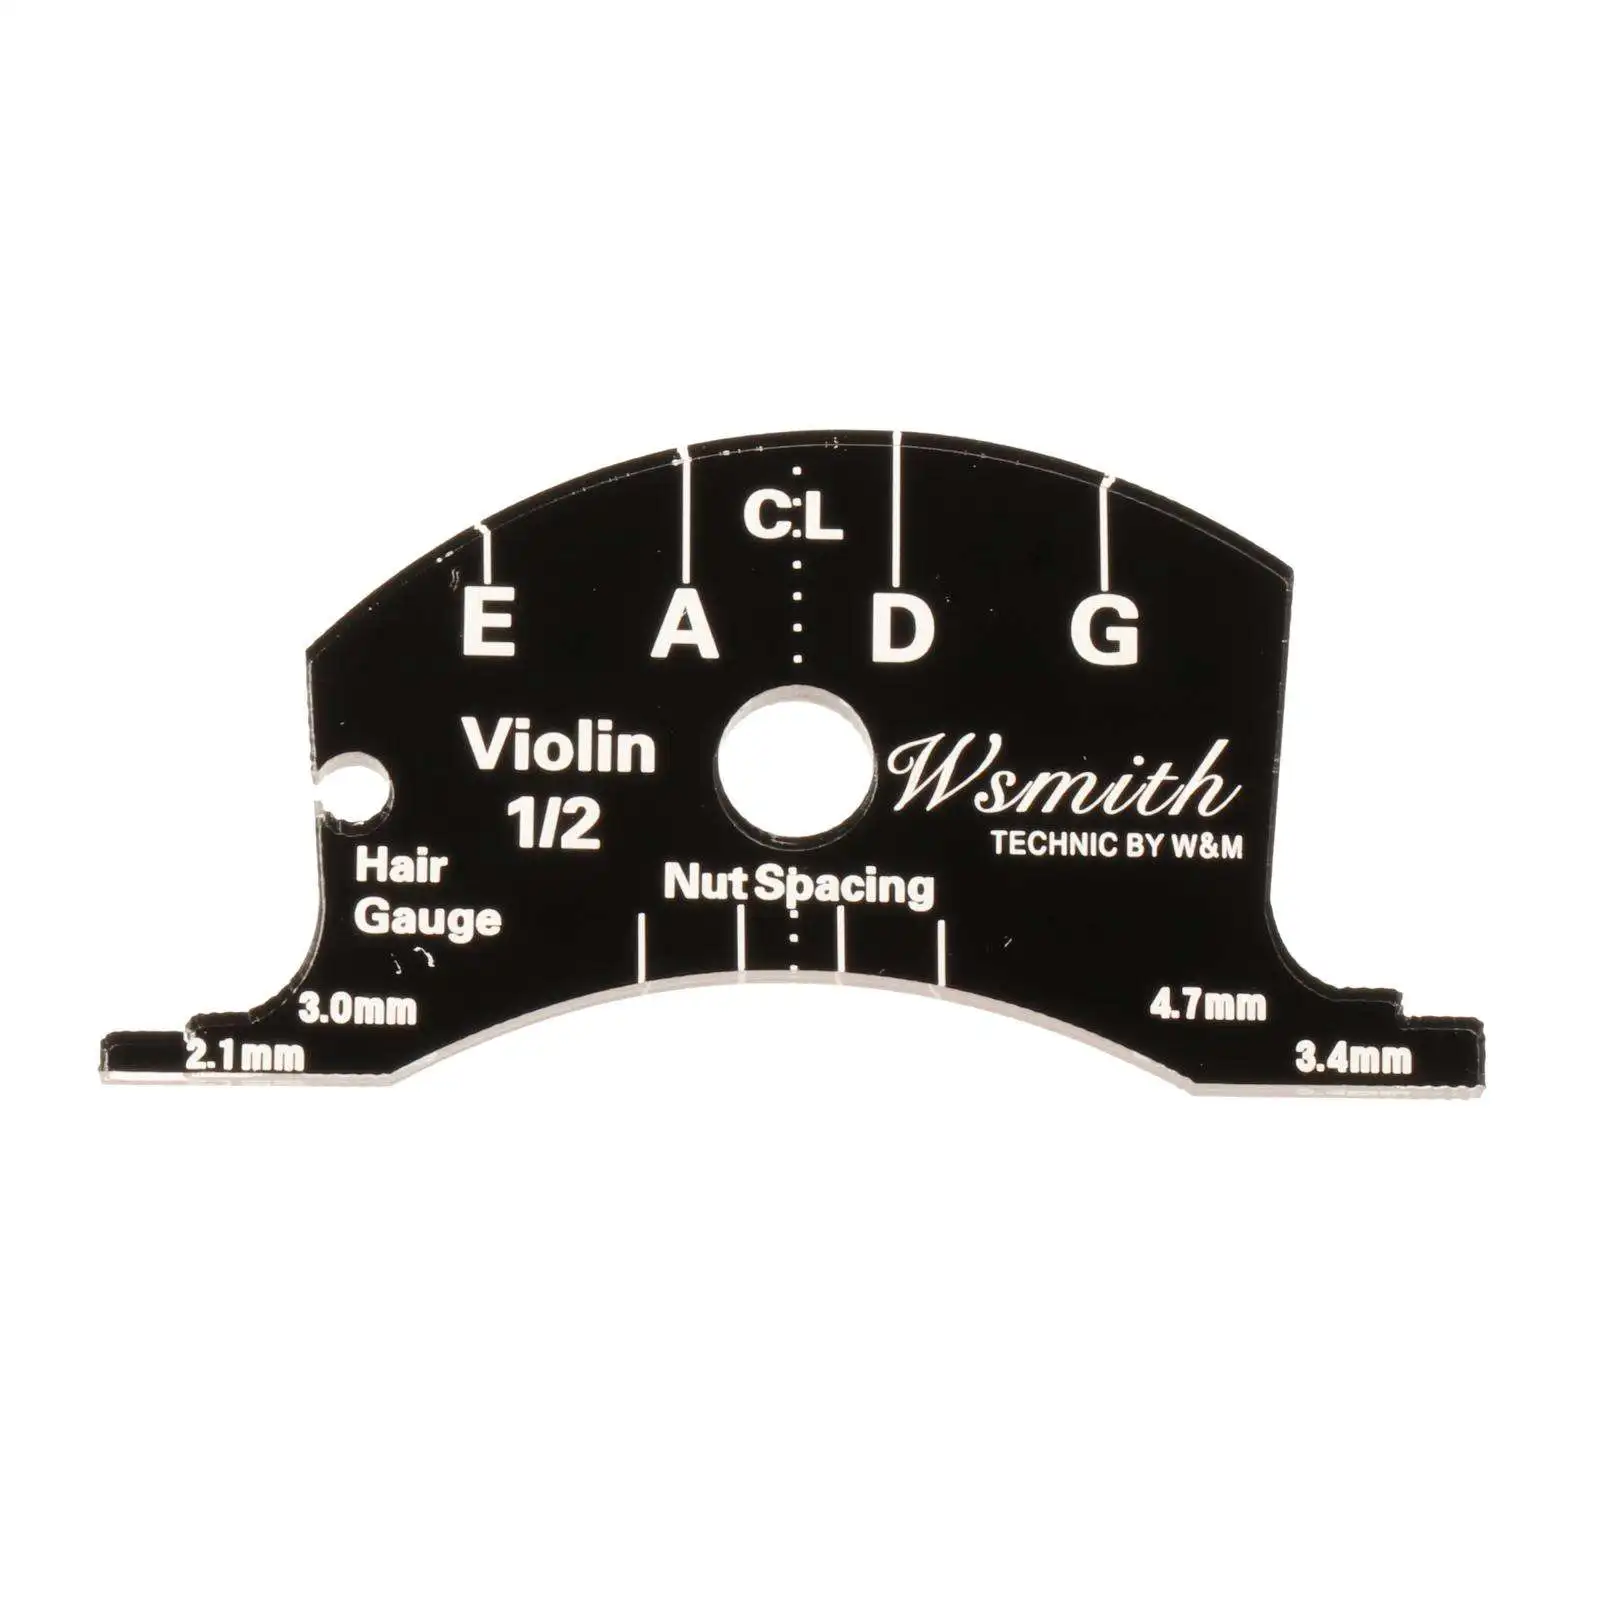 1/2 3/4 4/4 Viola Bridge Fingerboard Scraper Multifunctional Template Repair Reference Tool for Cello Violin Viola Accessories